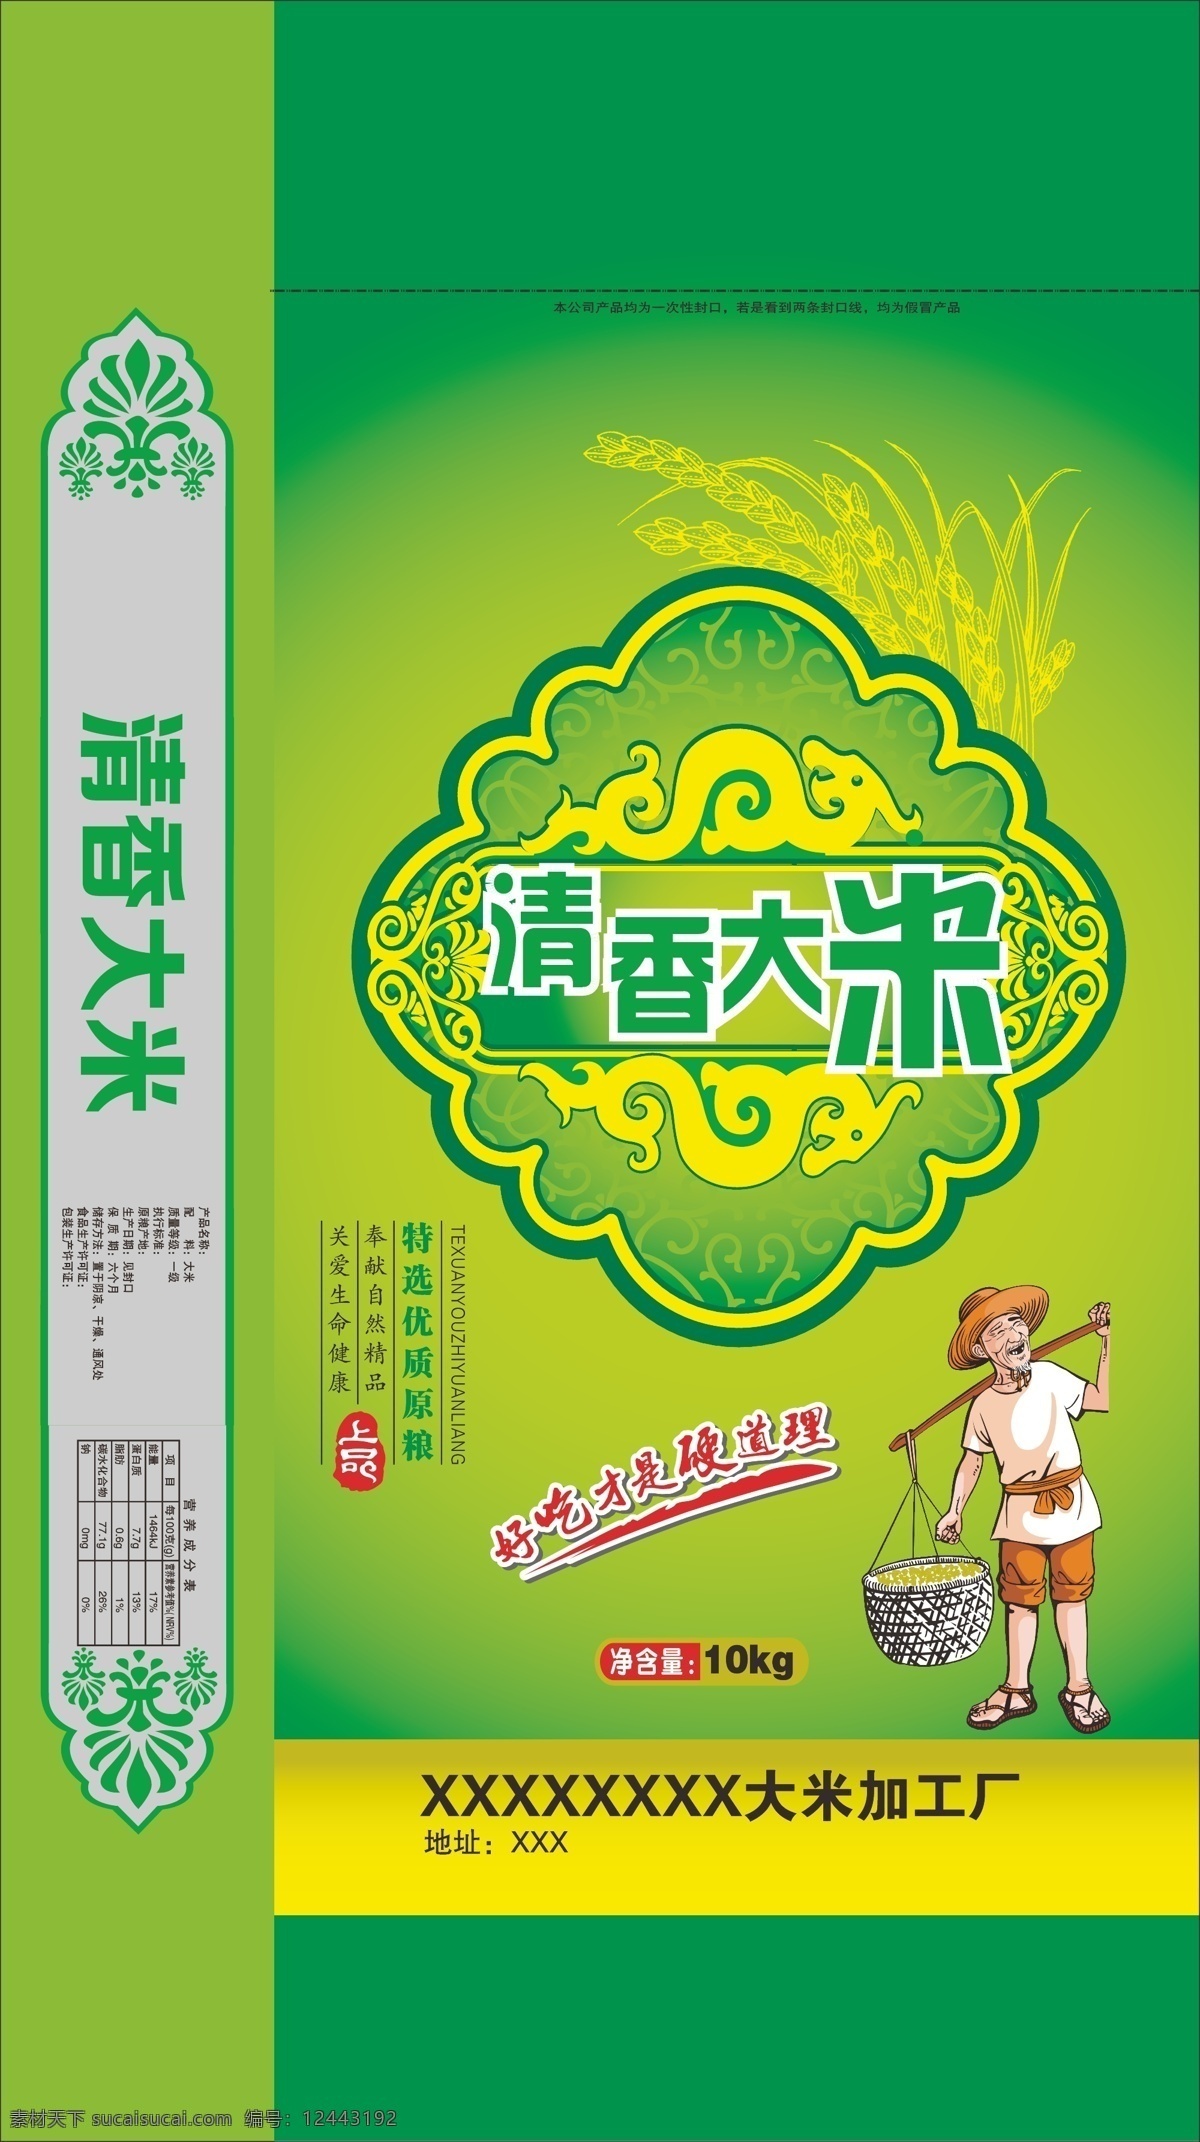 清香大米 老农 精品大米包装 包装模板 大米包装 稻谷 绿色米袋子 广告公司 宣传单 彩色印刷 包装设计